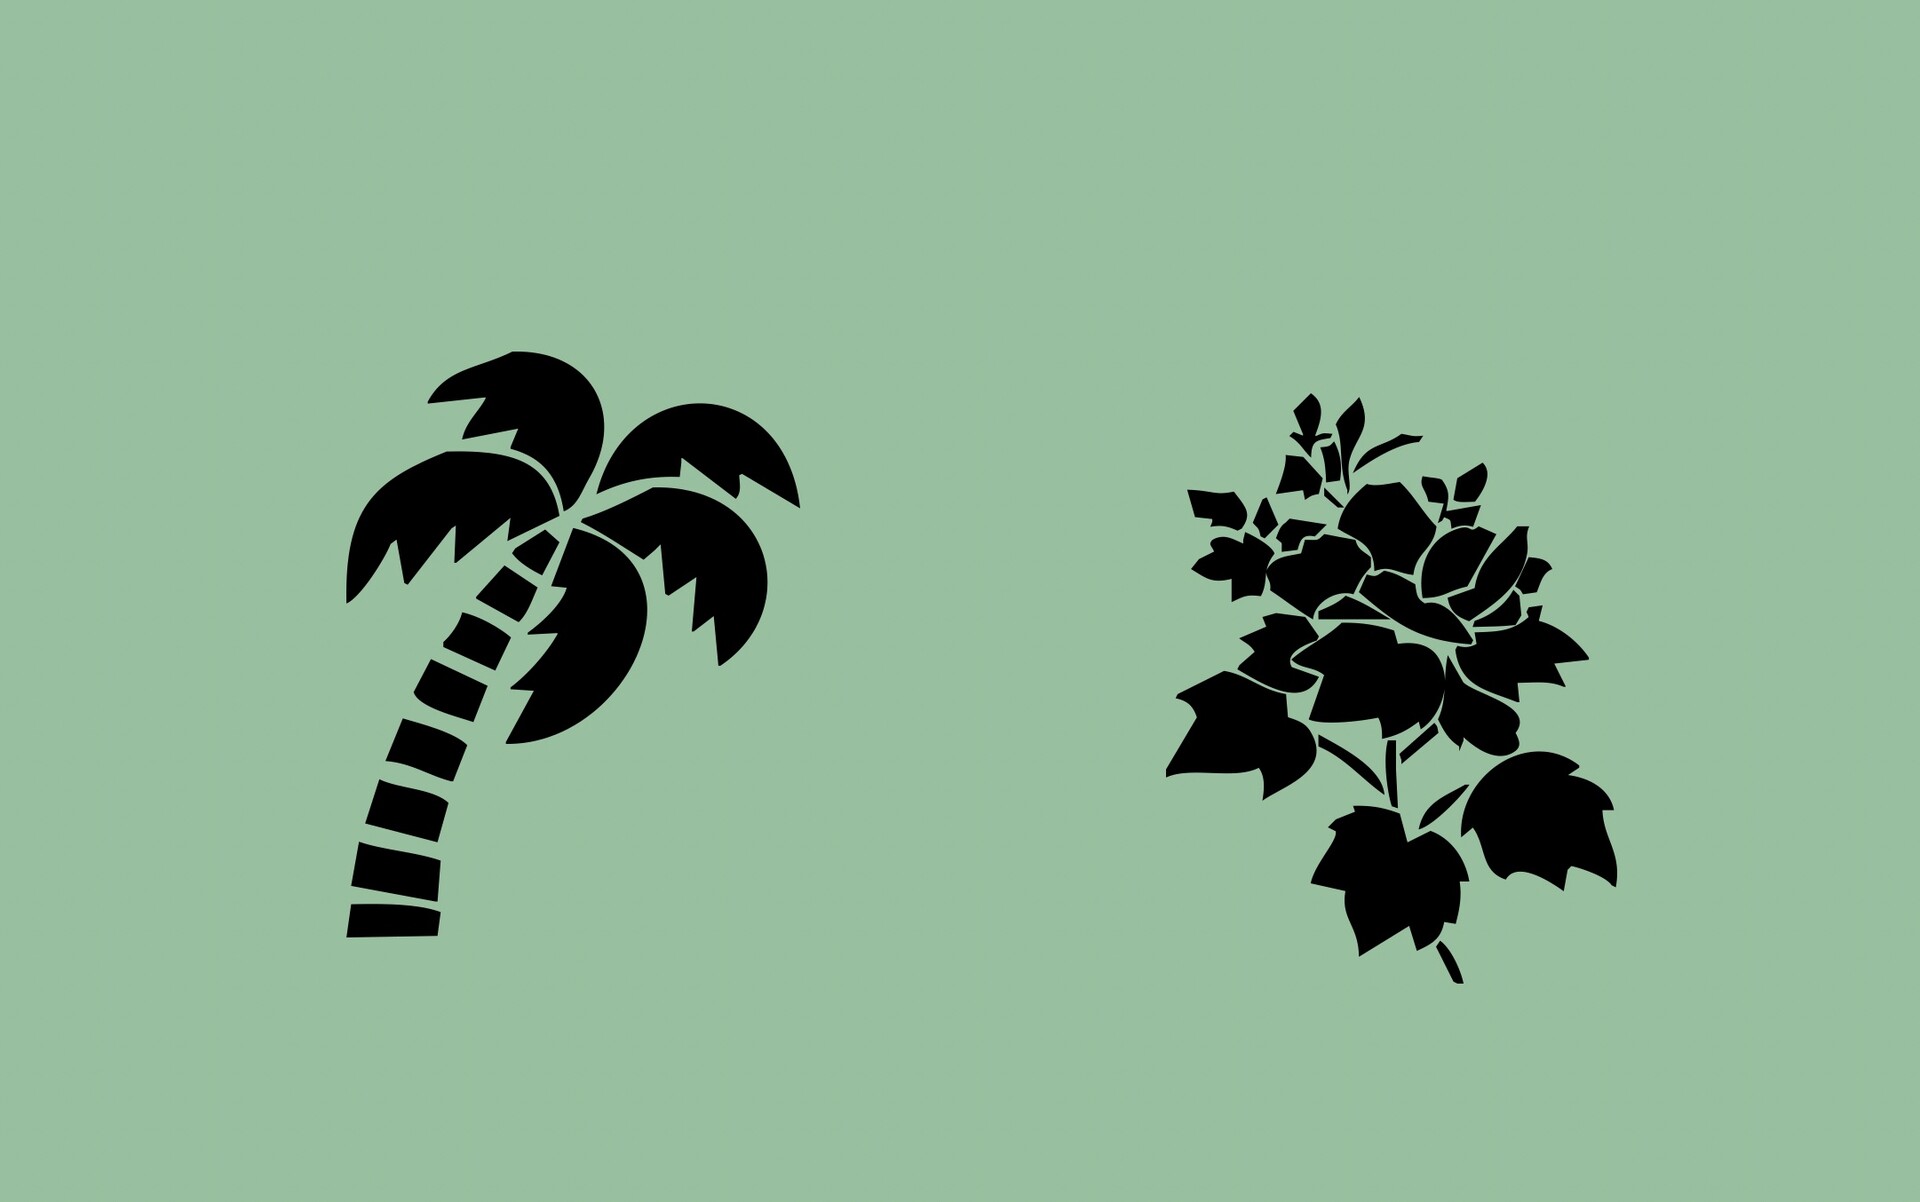 椰子树、玫瑰花图案PS形状